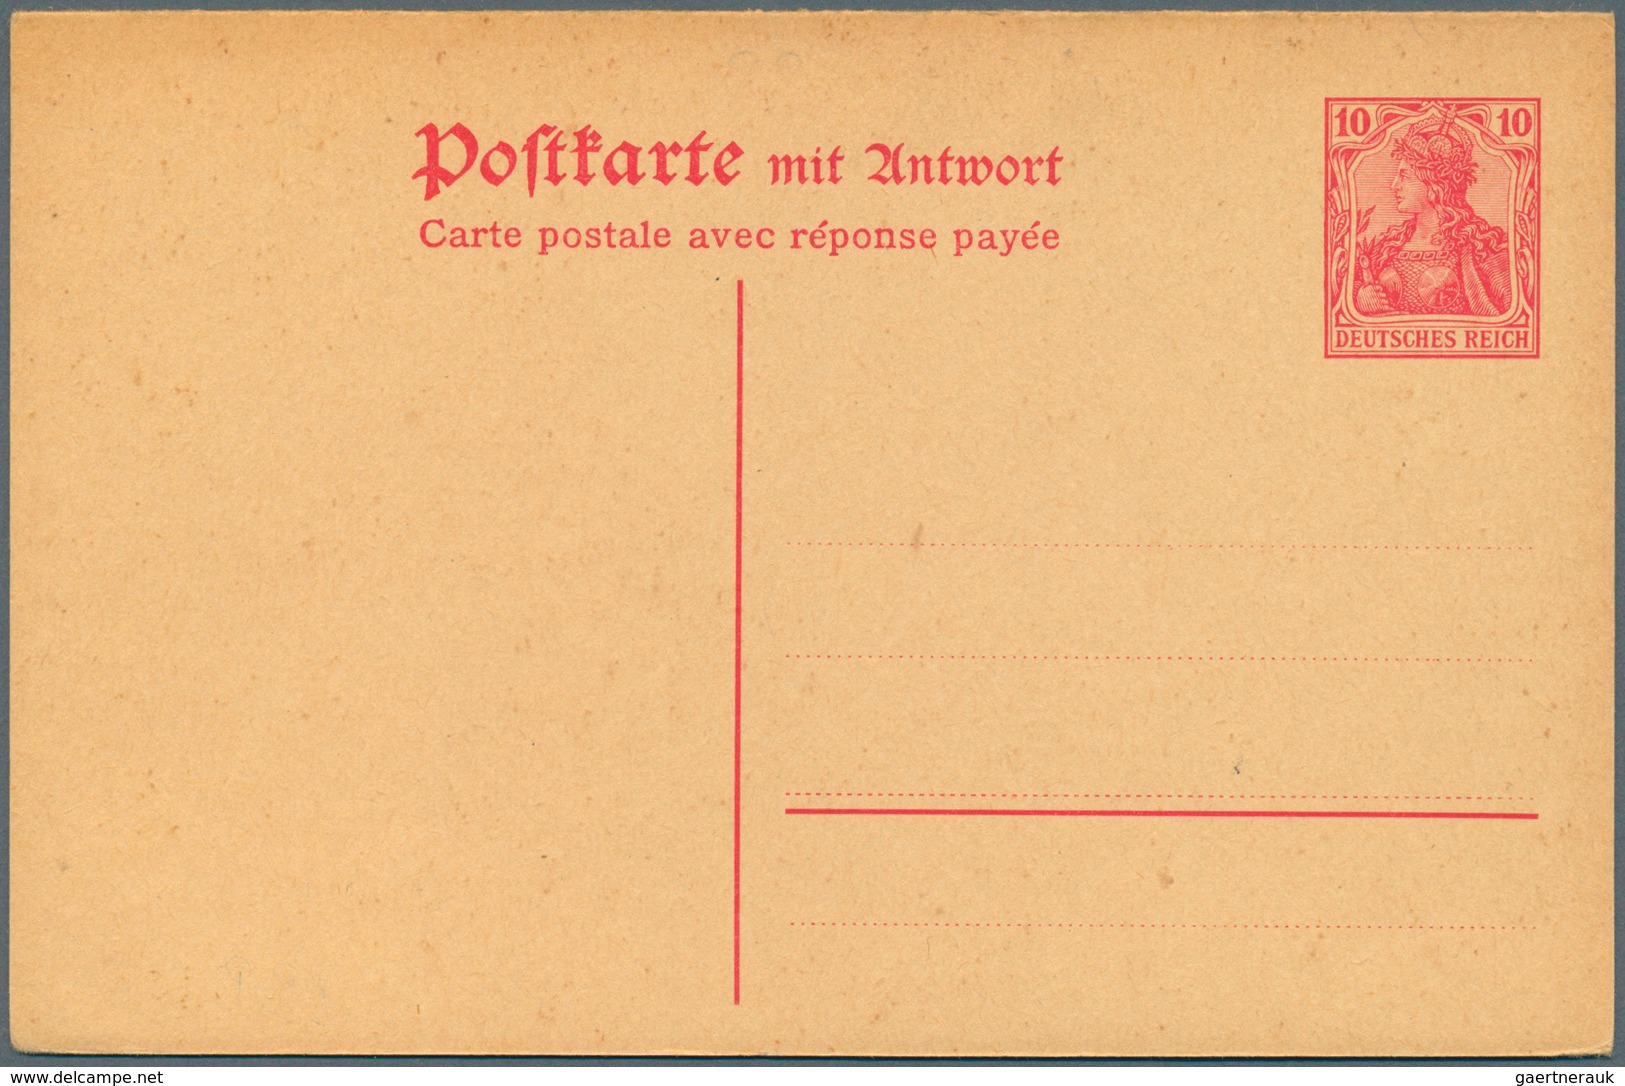 Deutsches Reich - Ganzsachen: 1872/1922. Interessante Sammlung von 72 Stücken, meist Postkarten, ink